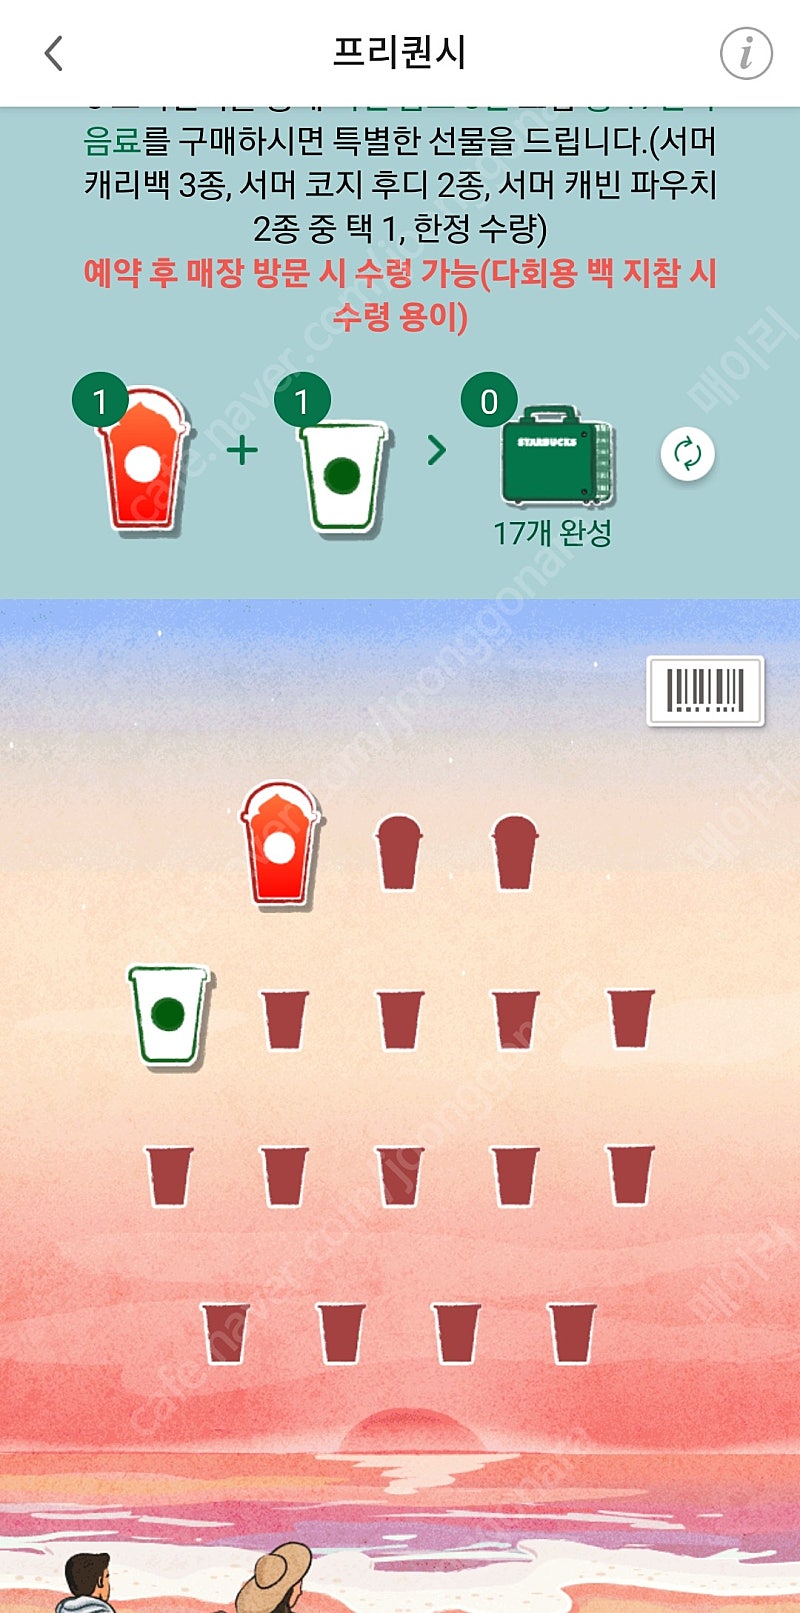 스벅 프리퀀시 하양1 빨강1 일괄 3500원 판매